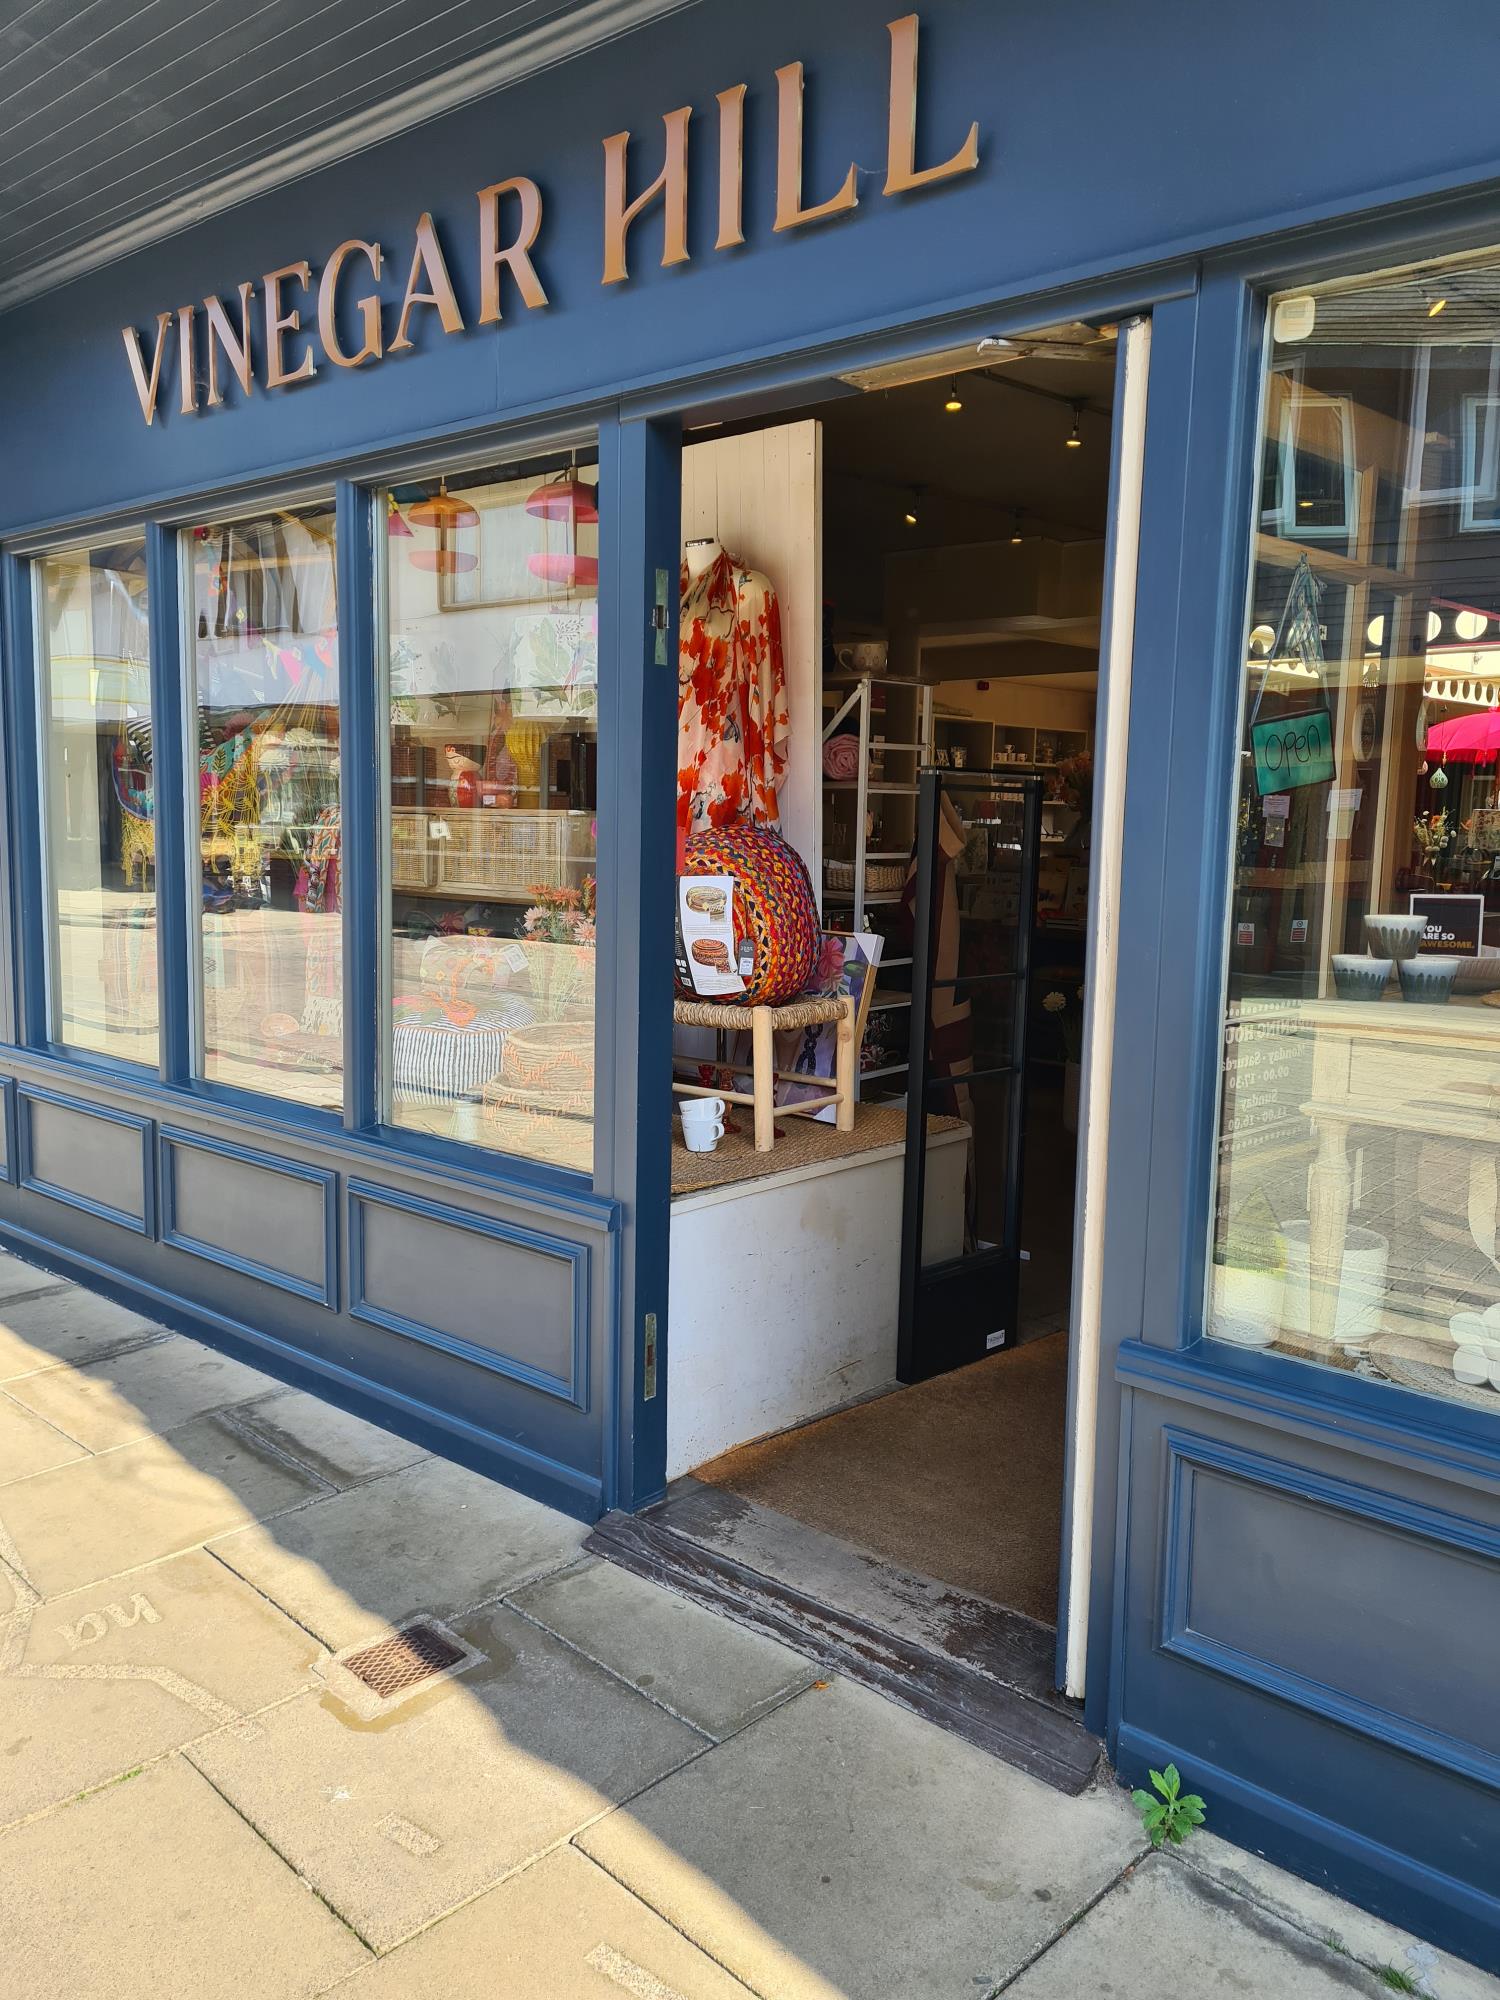 Vinegar Hill in Stratford